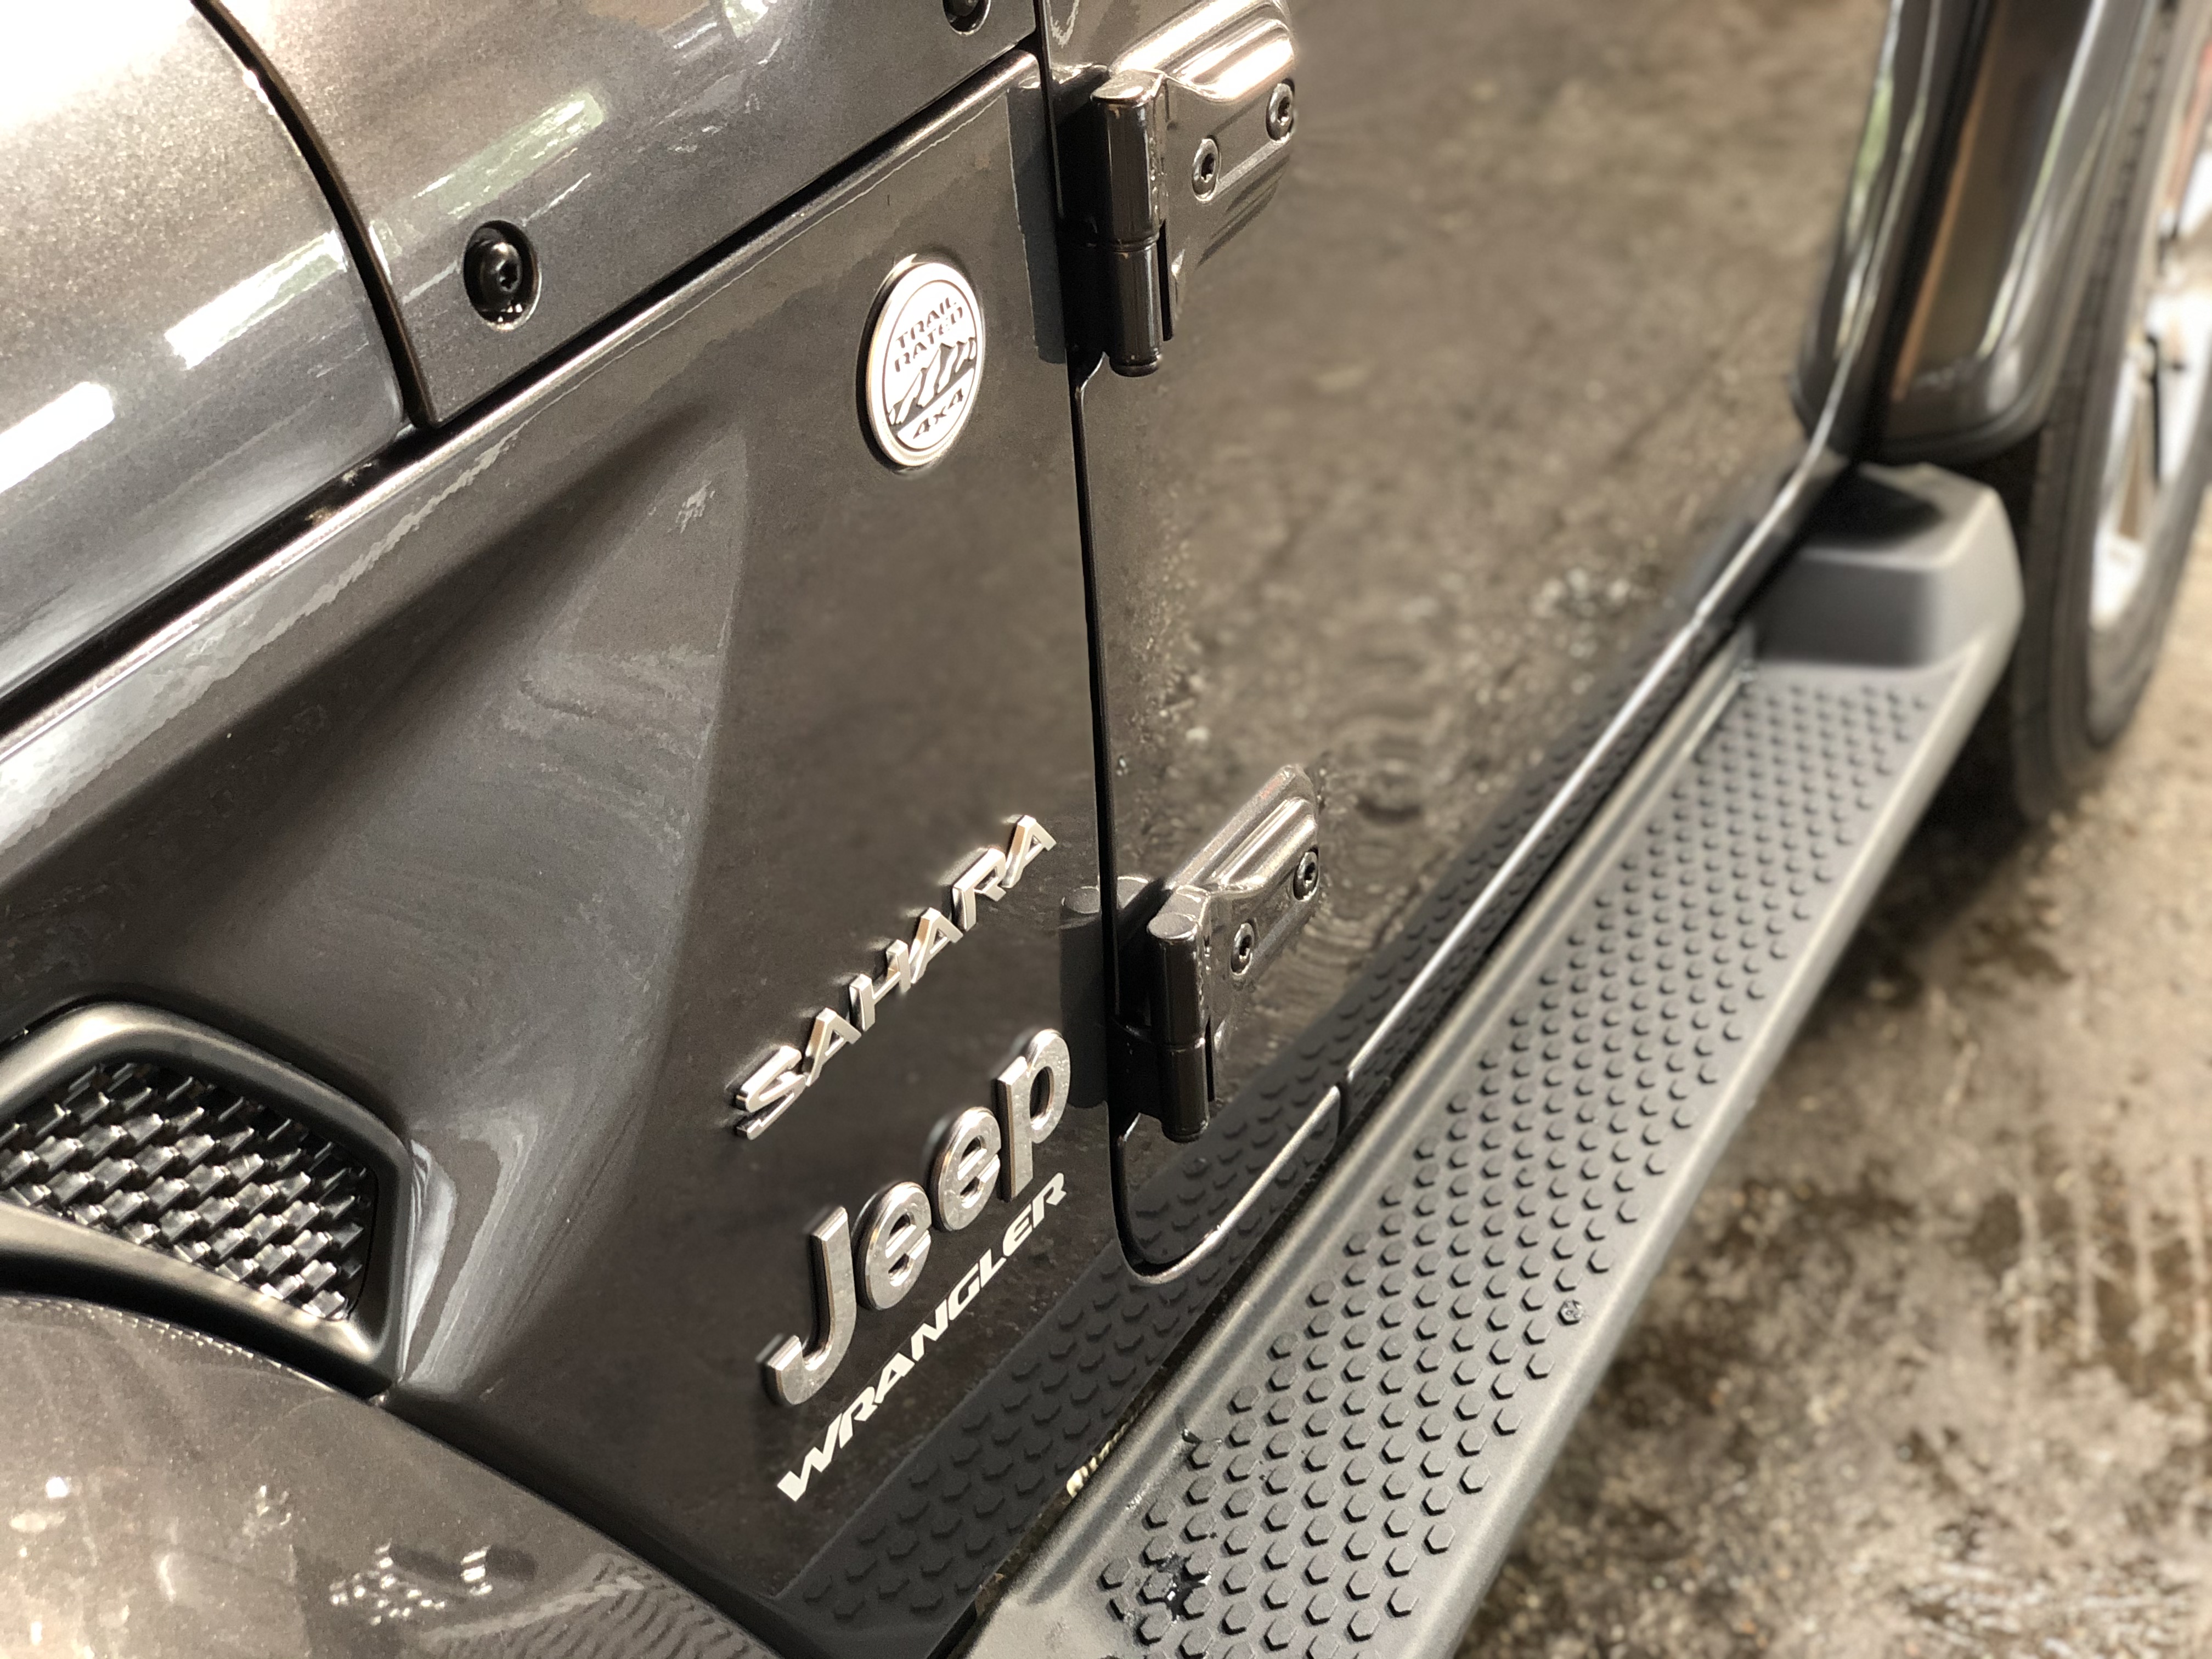 Jeep Wrangler 2.0T Sahara